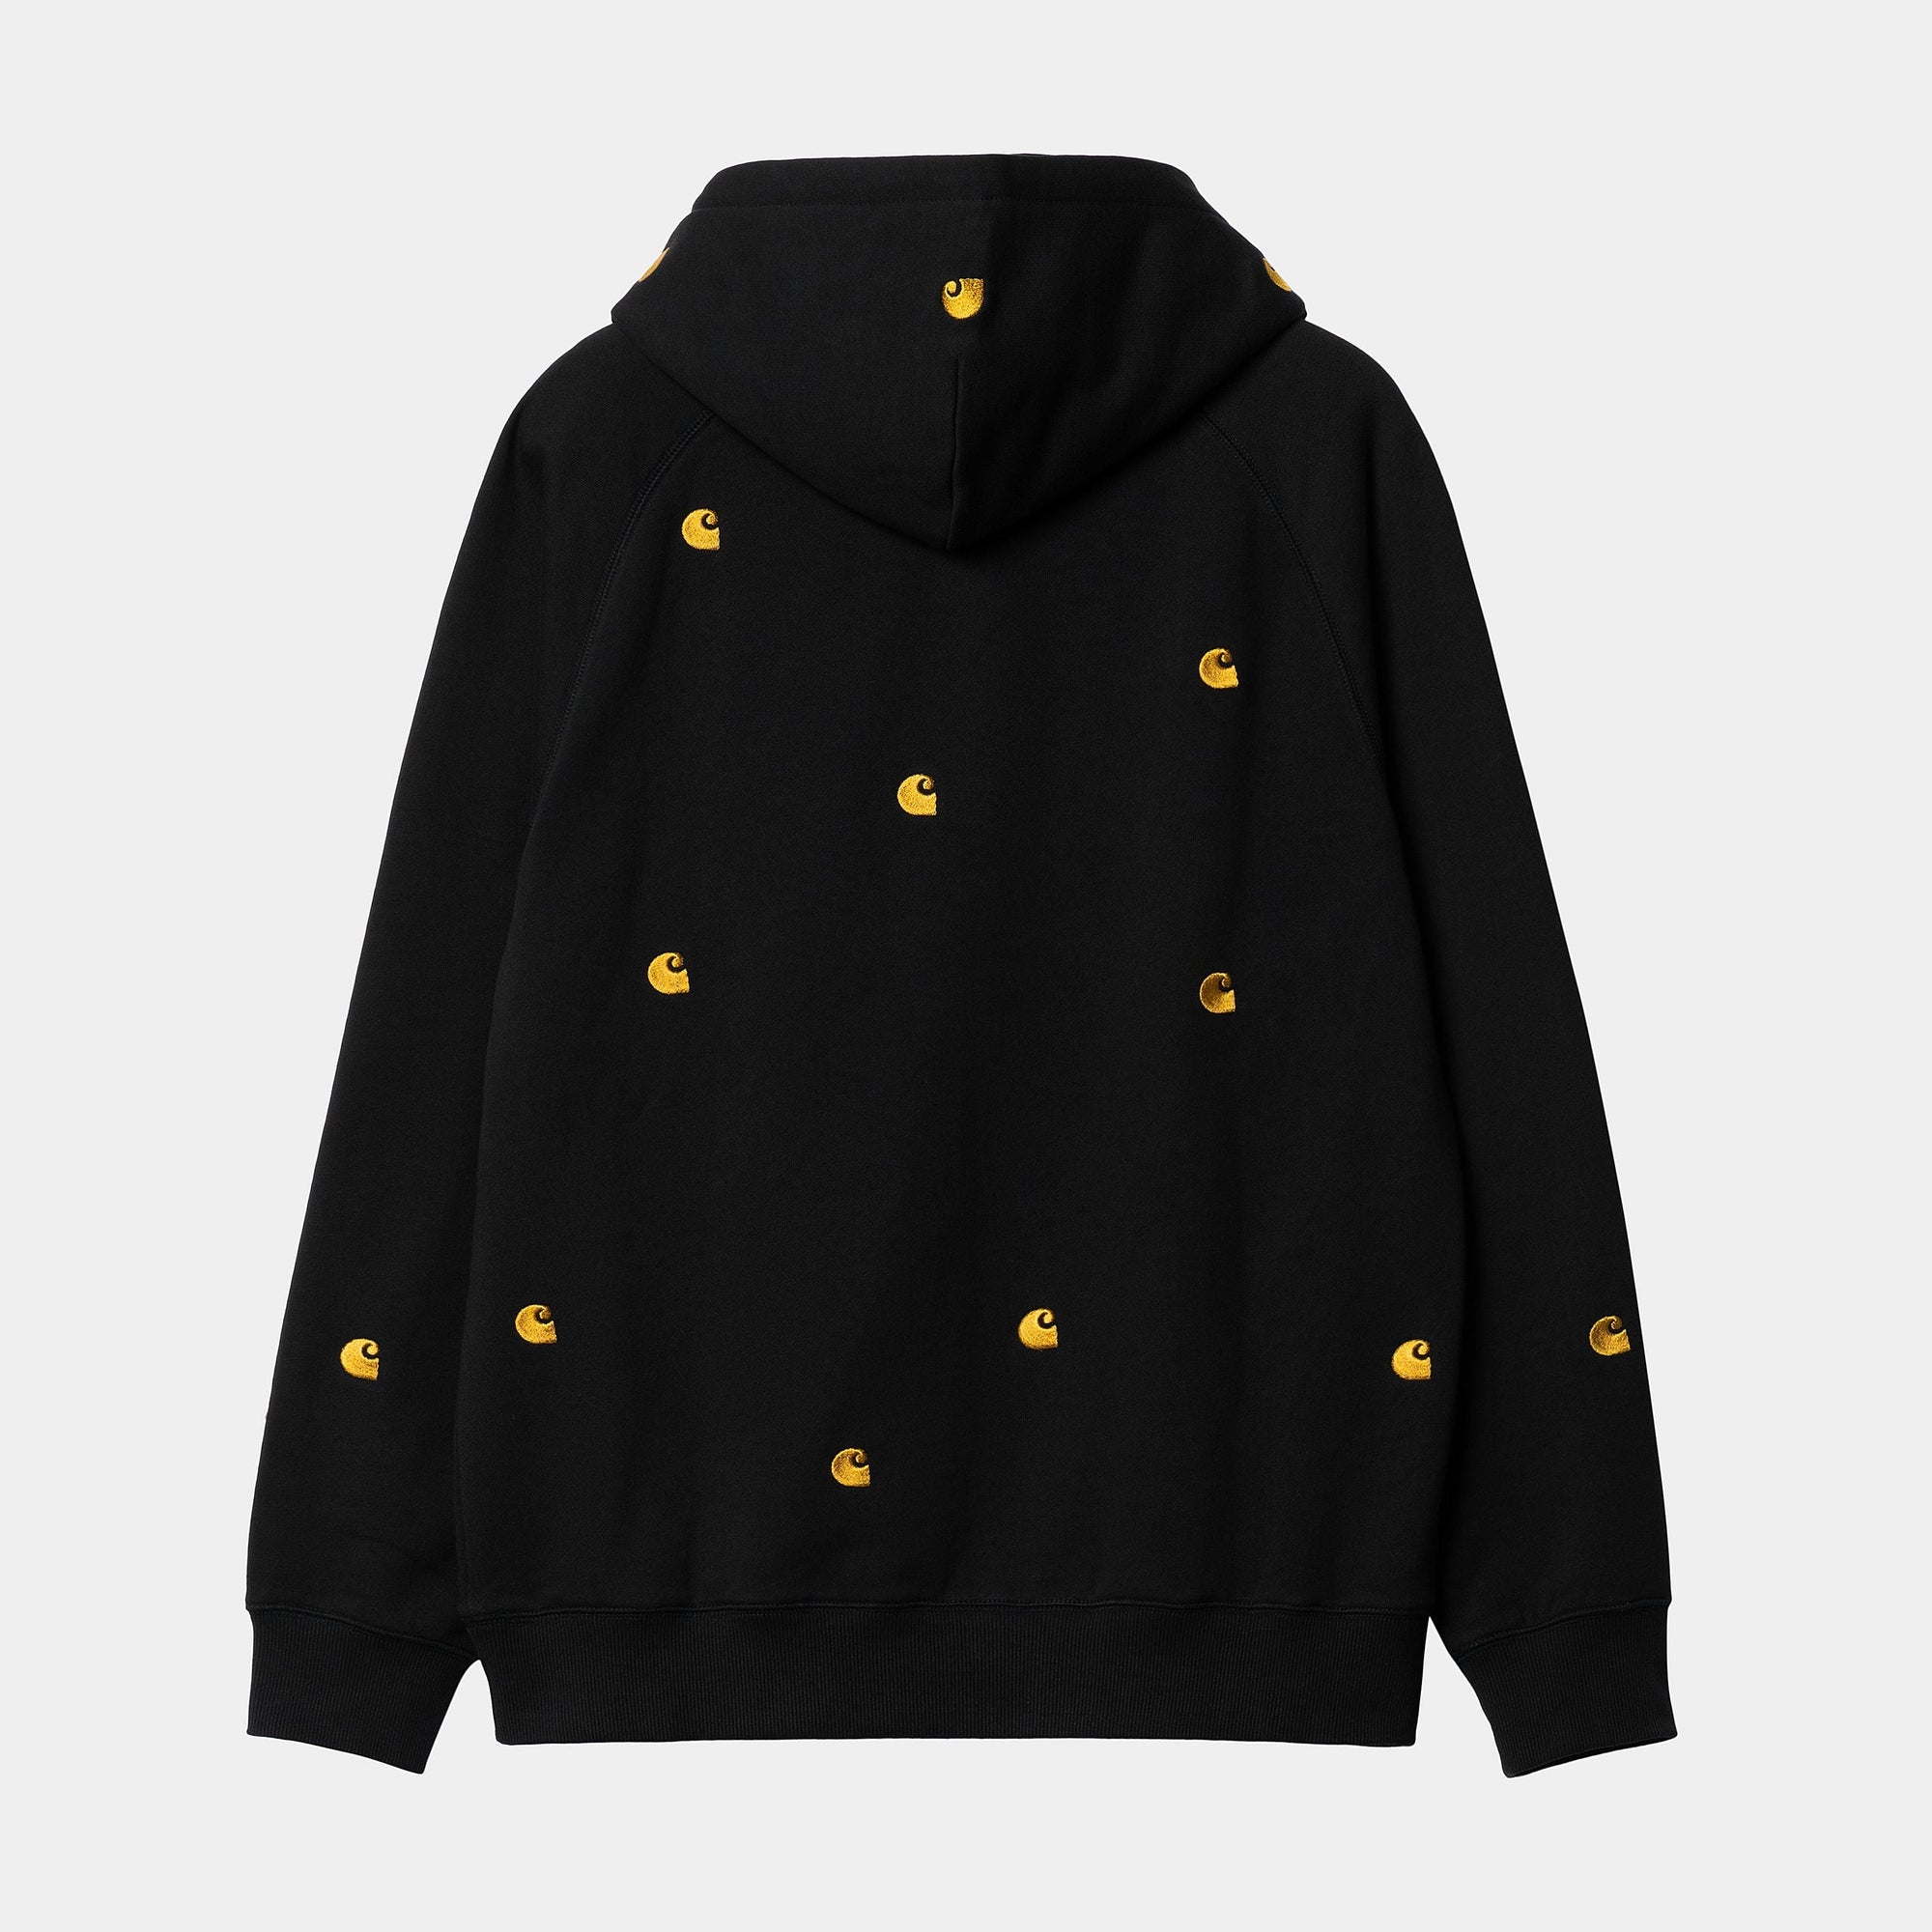 Carhartt WIP - Seek Pullover Hooded Sweatshirt - Black